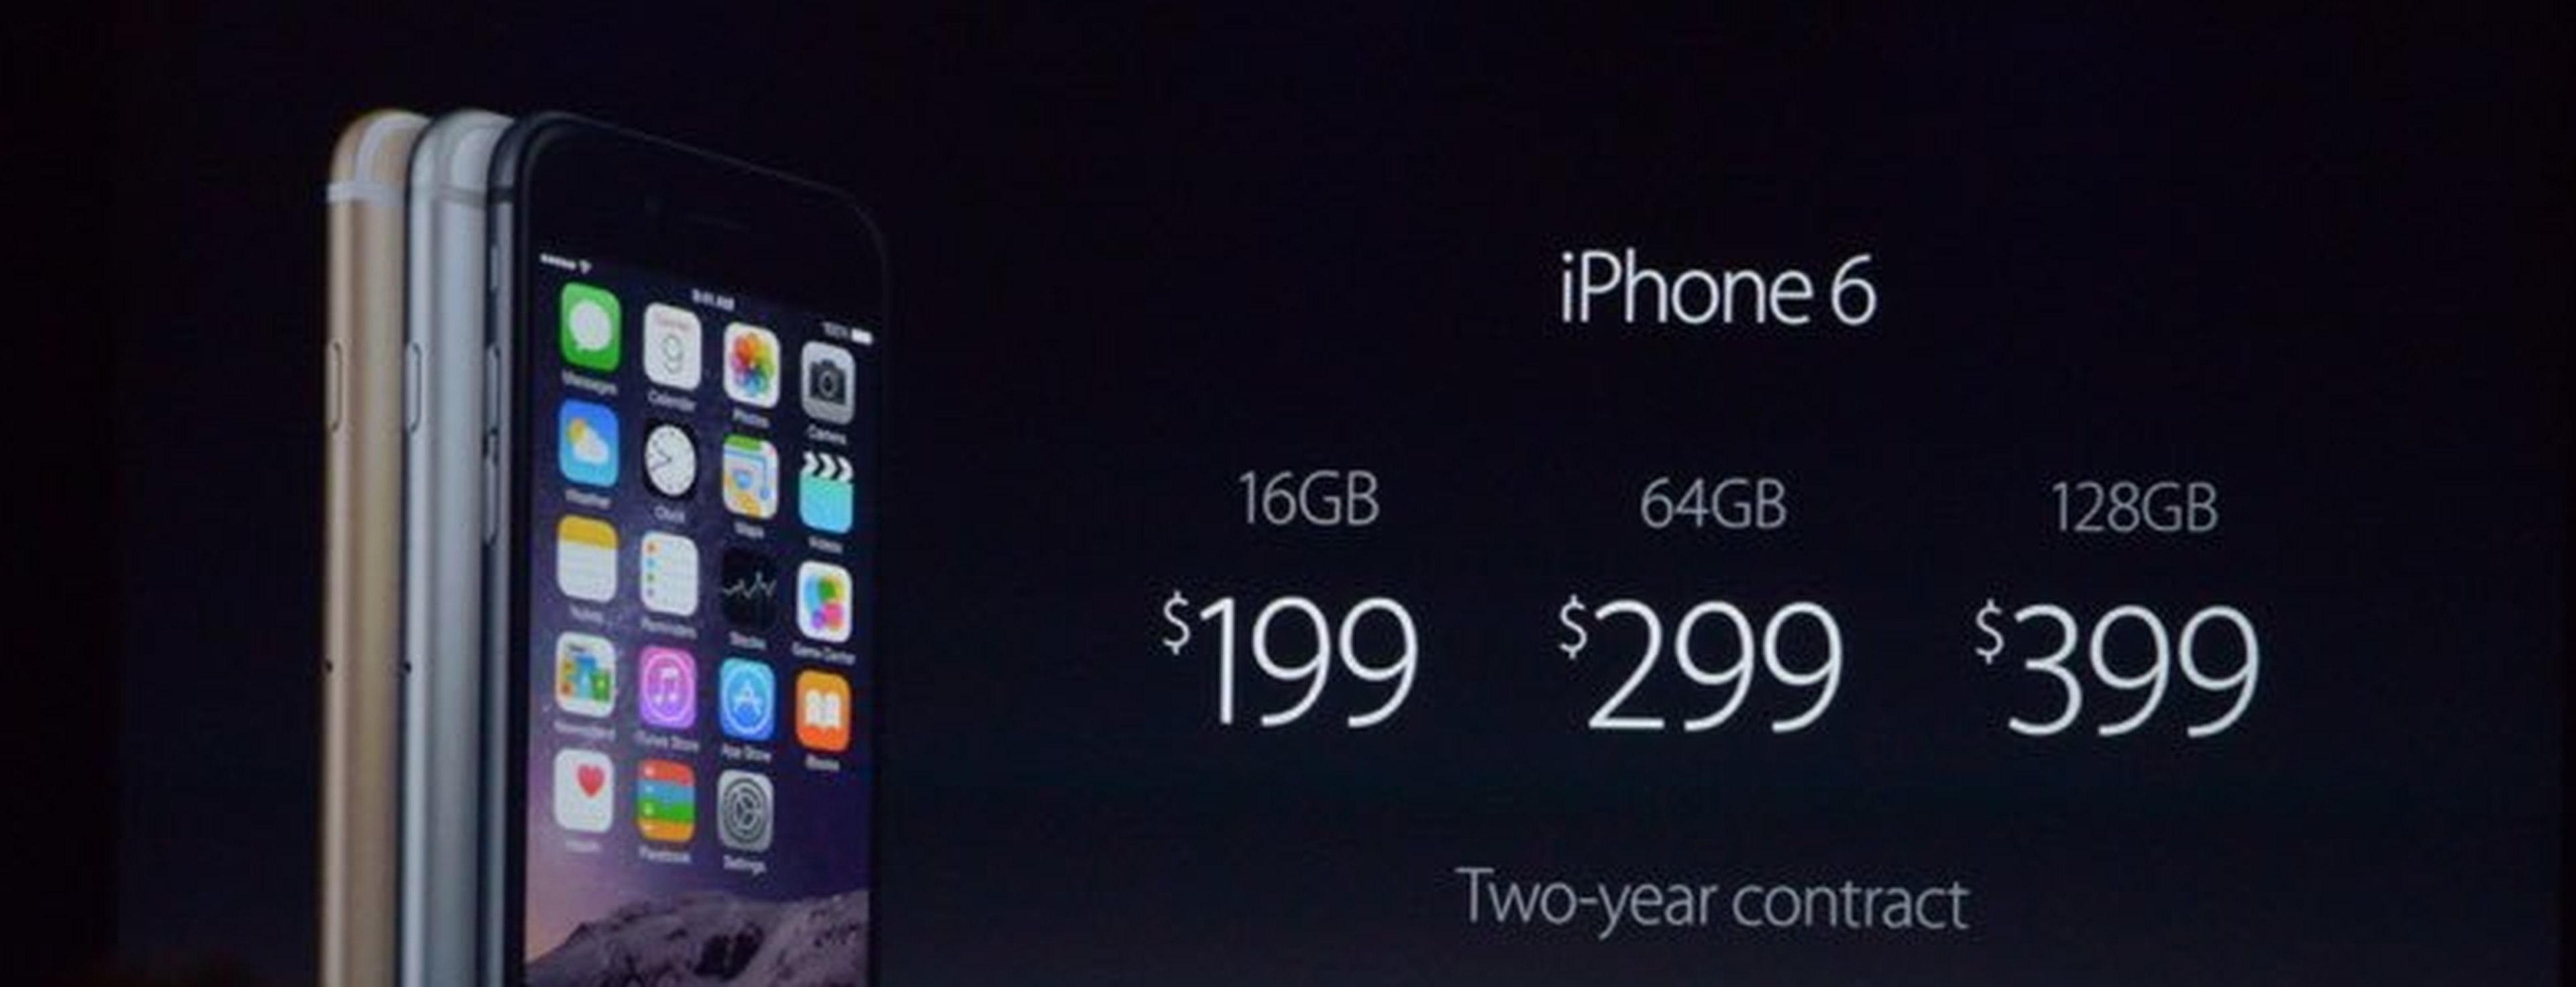 precios iphone 6